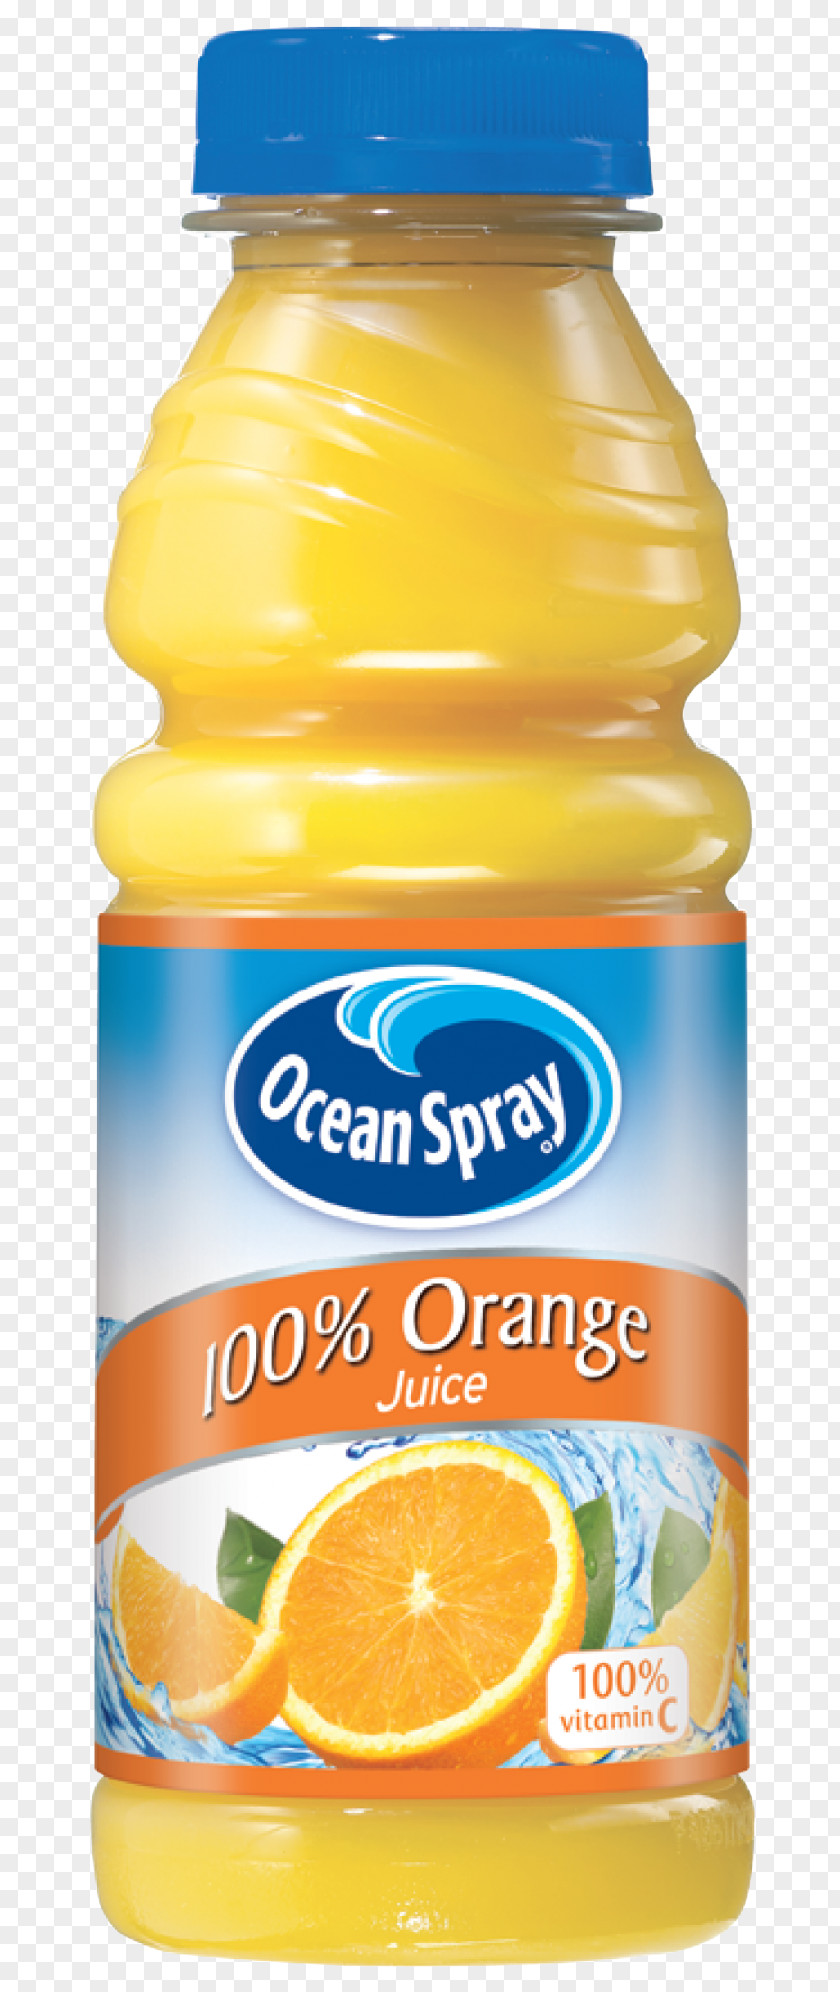 Juice Orange Ocean Spray Tropicana Products PNG